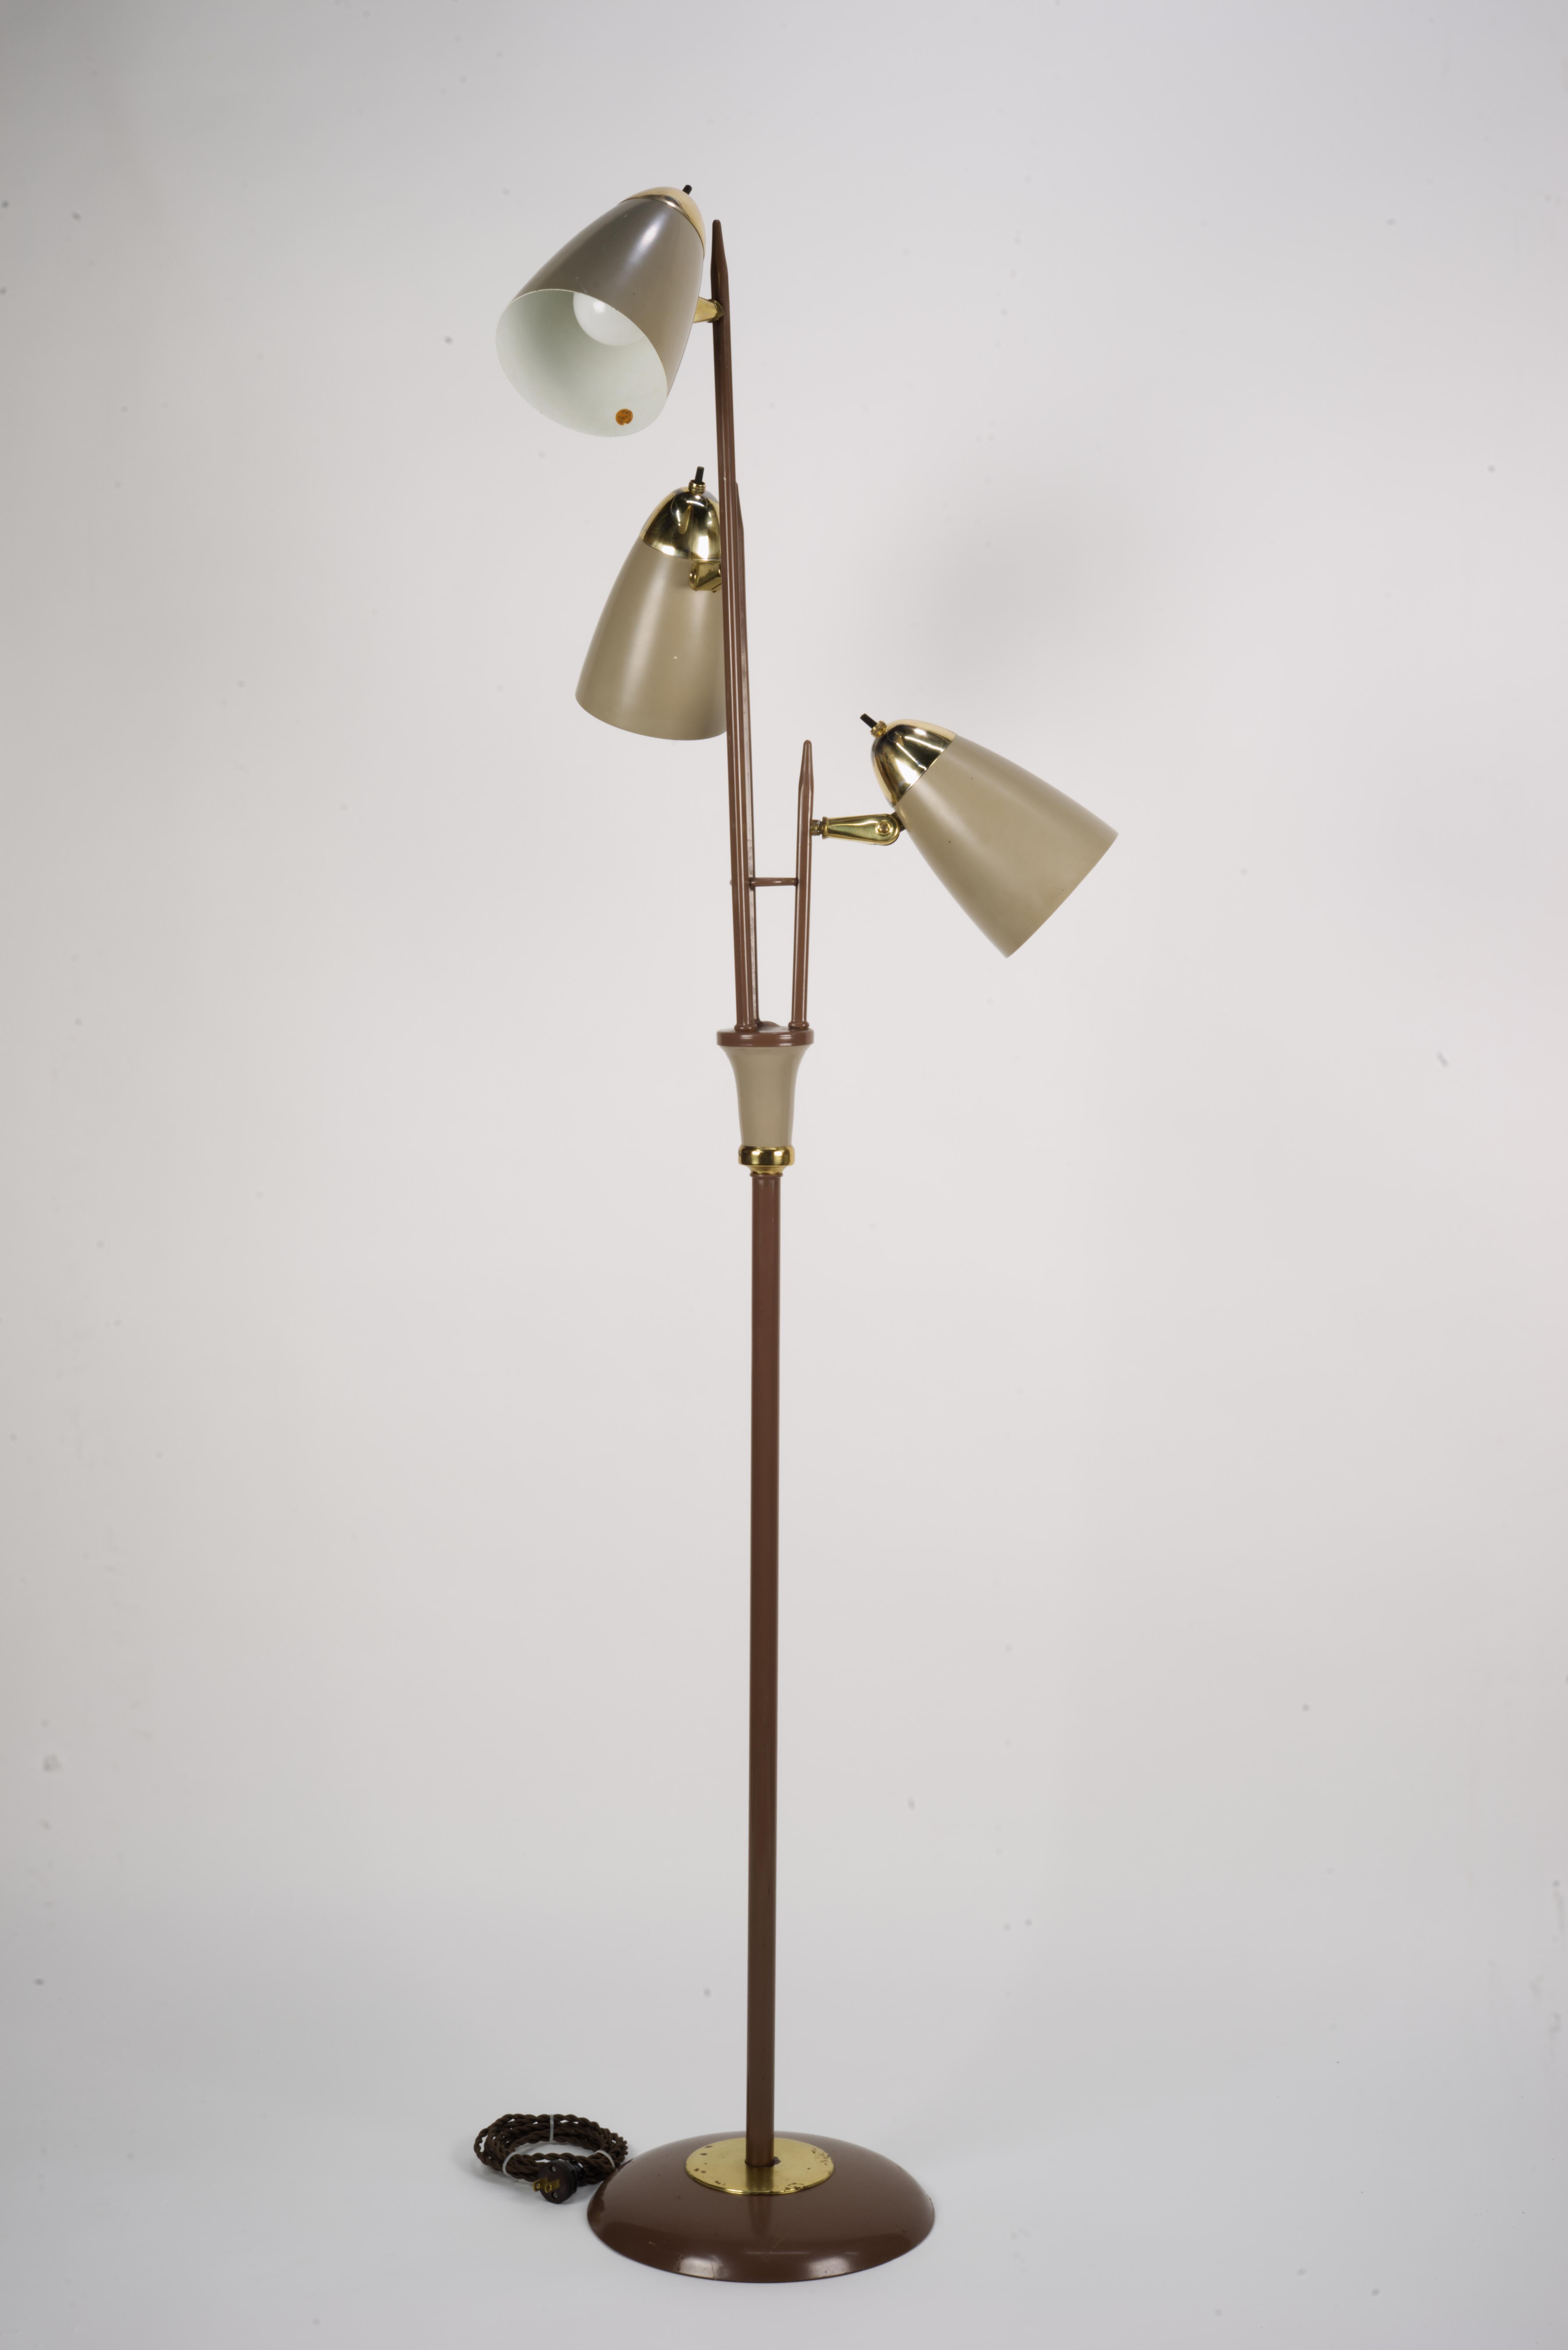 Lampadaire Triennale de Gerald Thurston. Il s'agit d'un design iconique bien connu. 
Lampe ayant subi un bon nettoyage. 
Les prises de courant ont été remplacées par des unités de première qualité homologuées UL. Toutes les lumières fonctionnent et